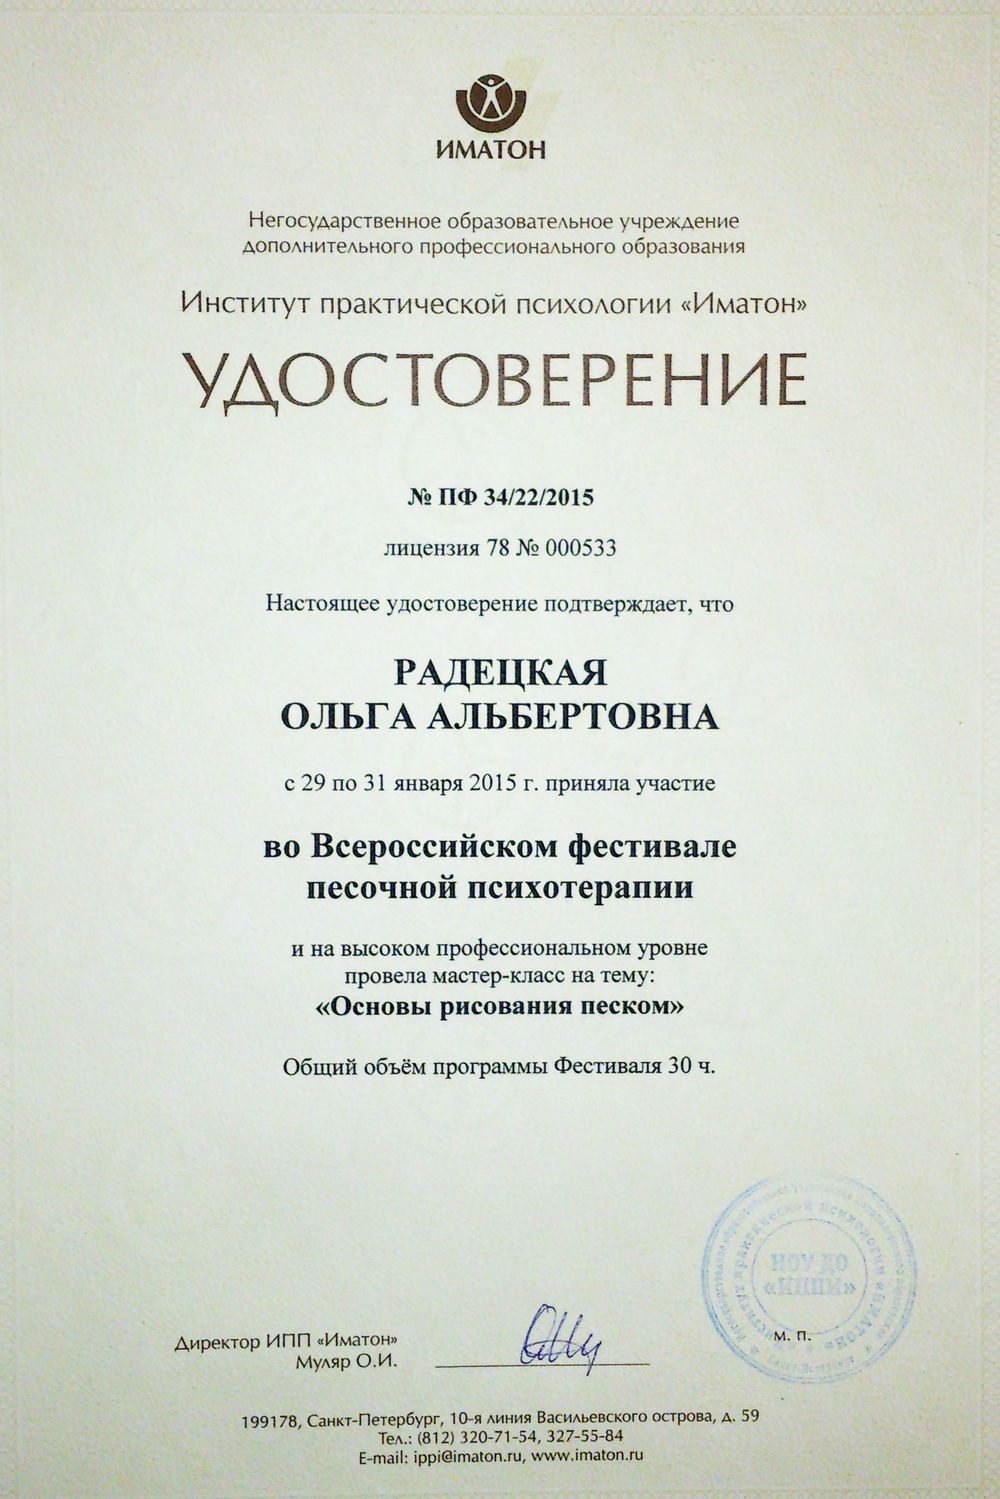 Всероссийский фестиваль песочной психотерапии